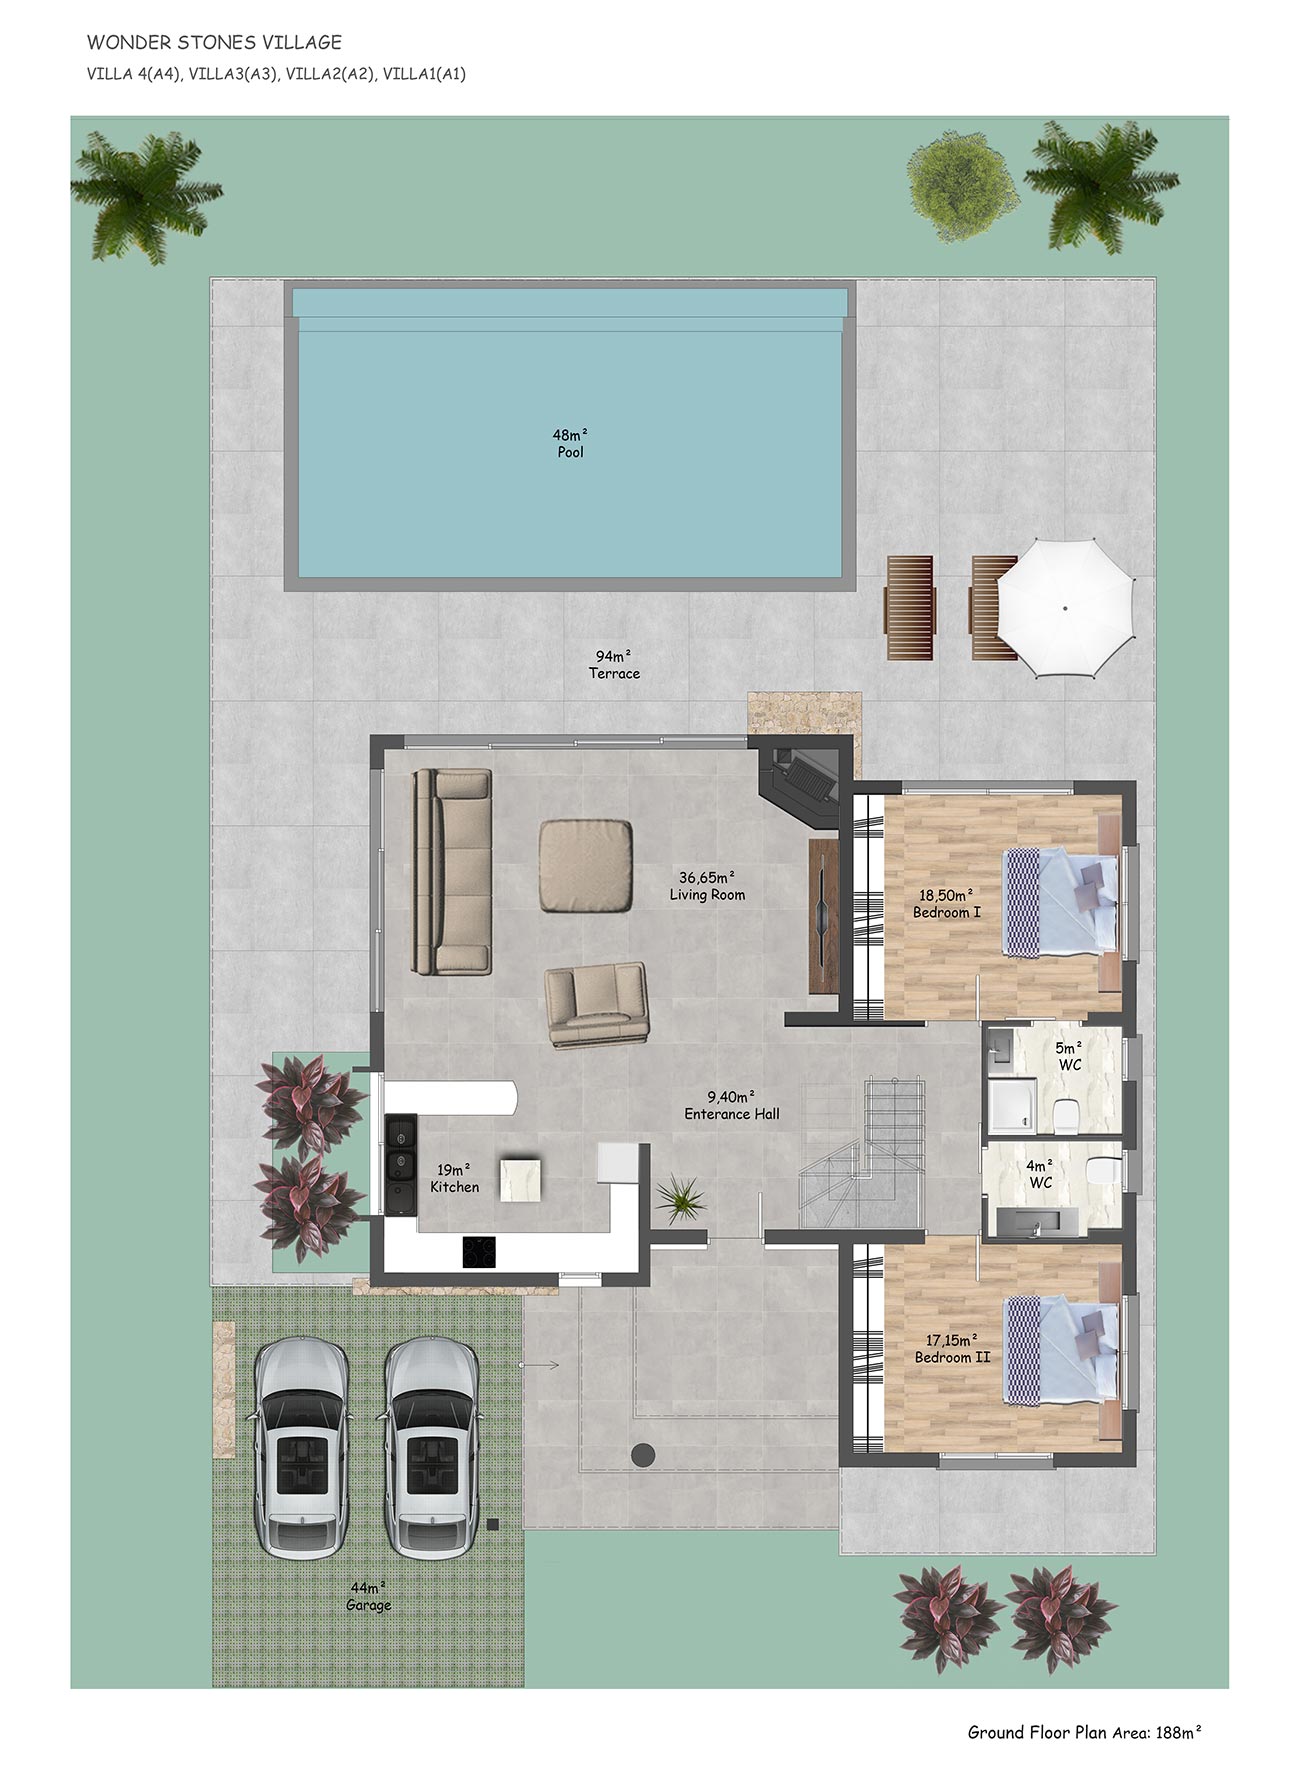 Floor Plan - Ground floor 